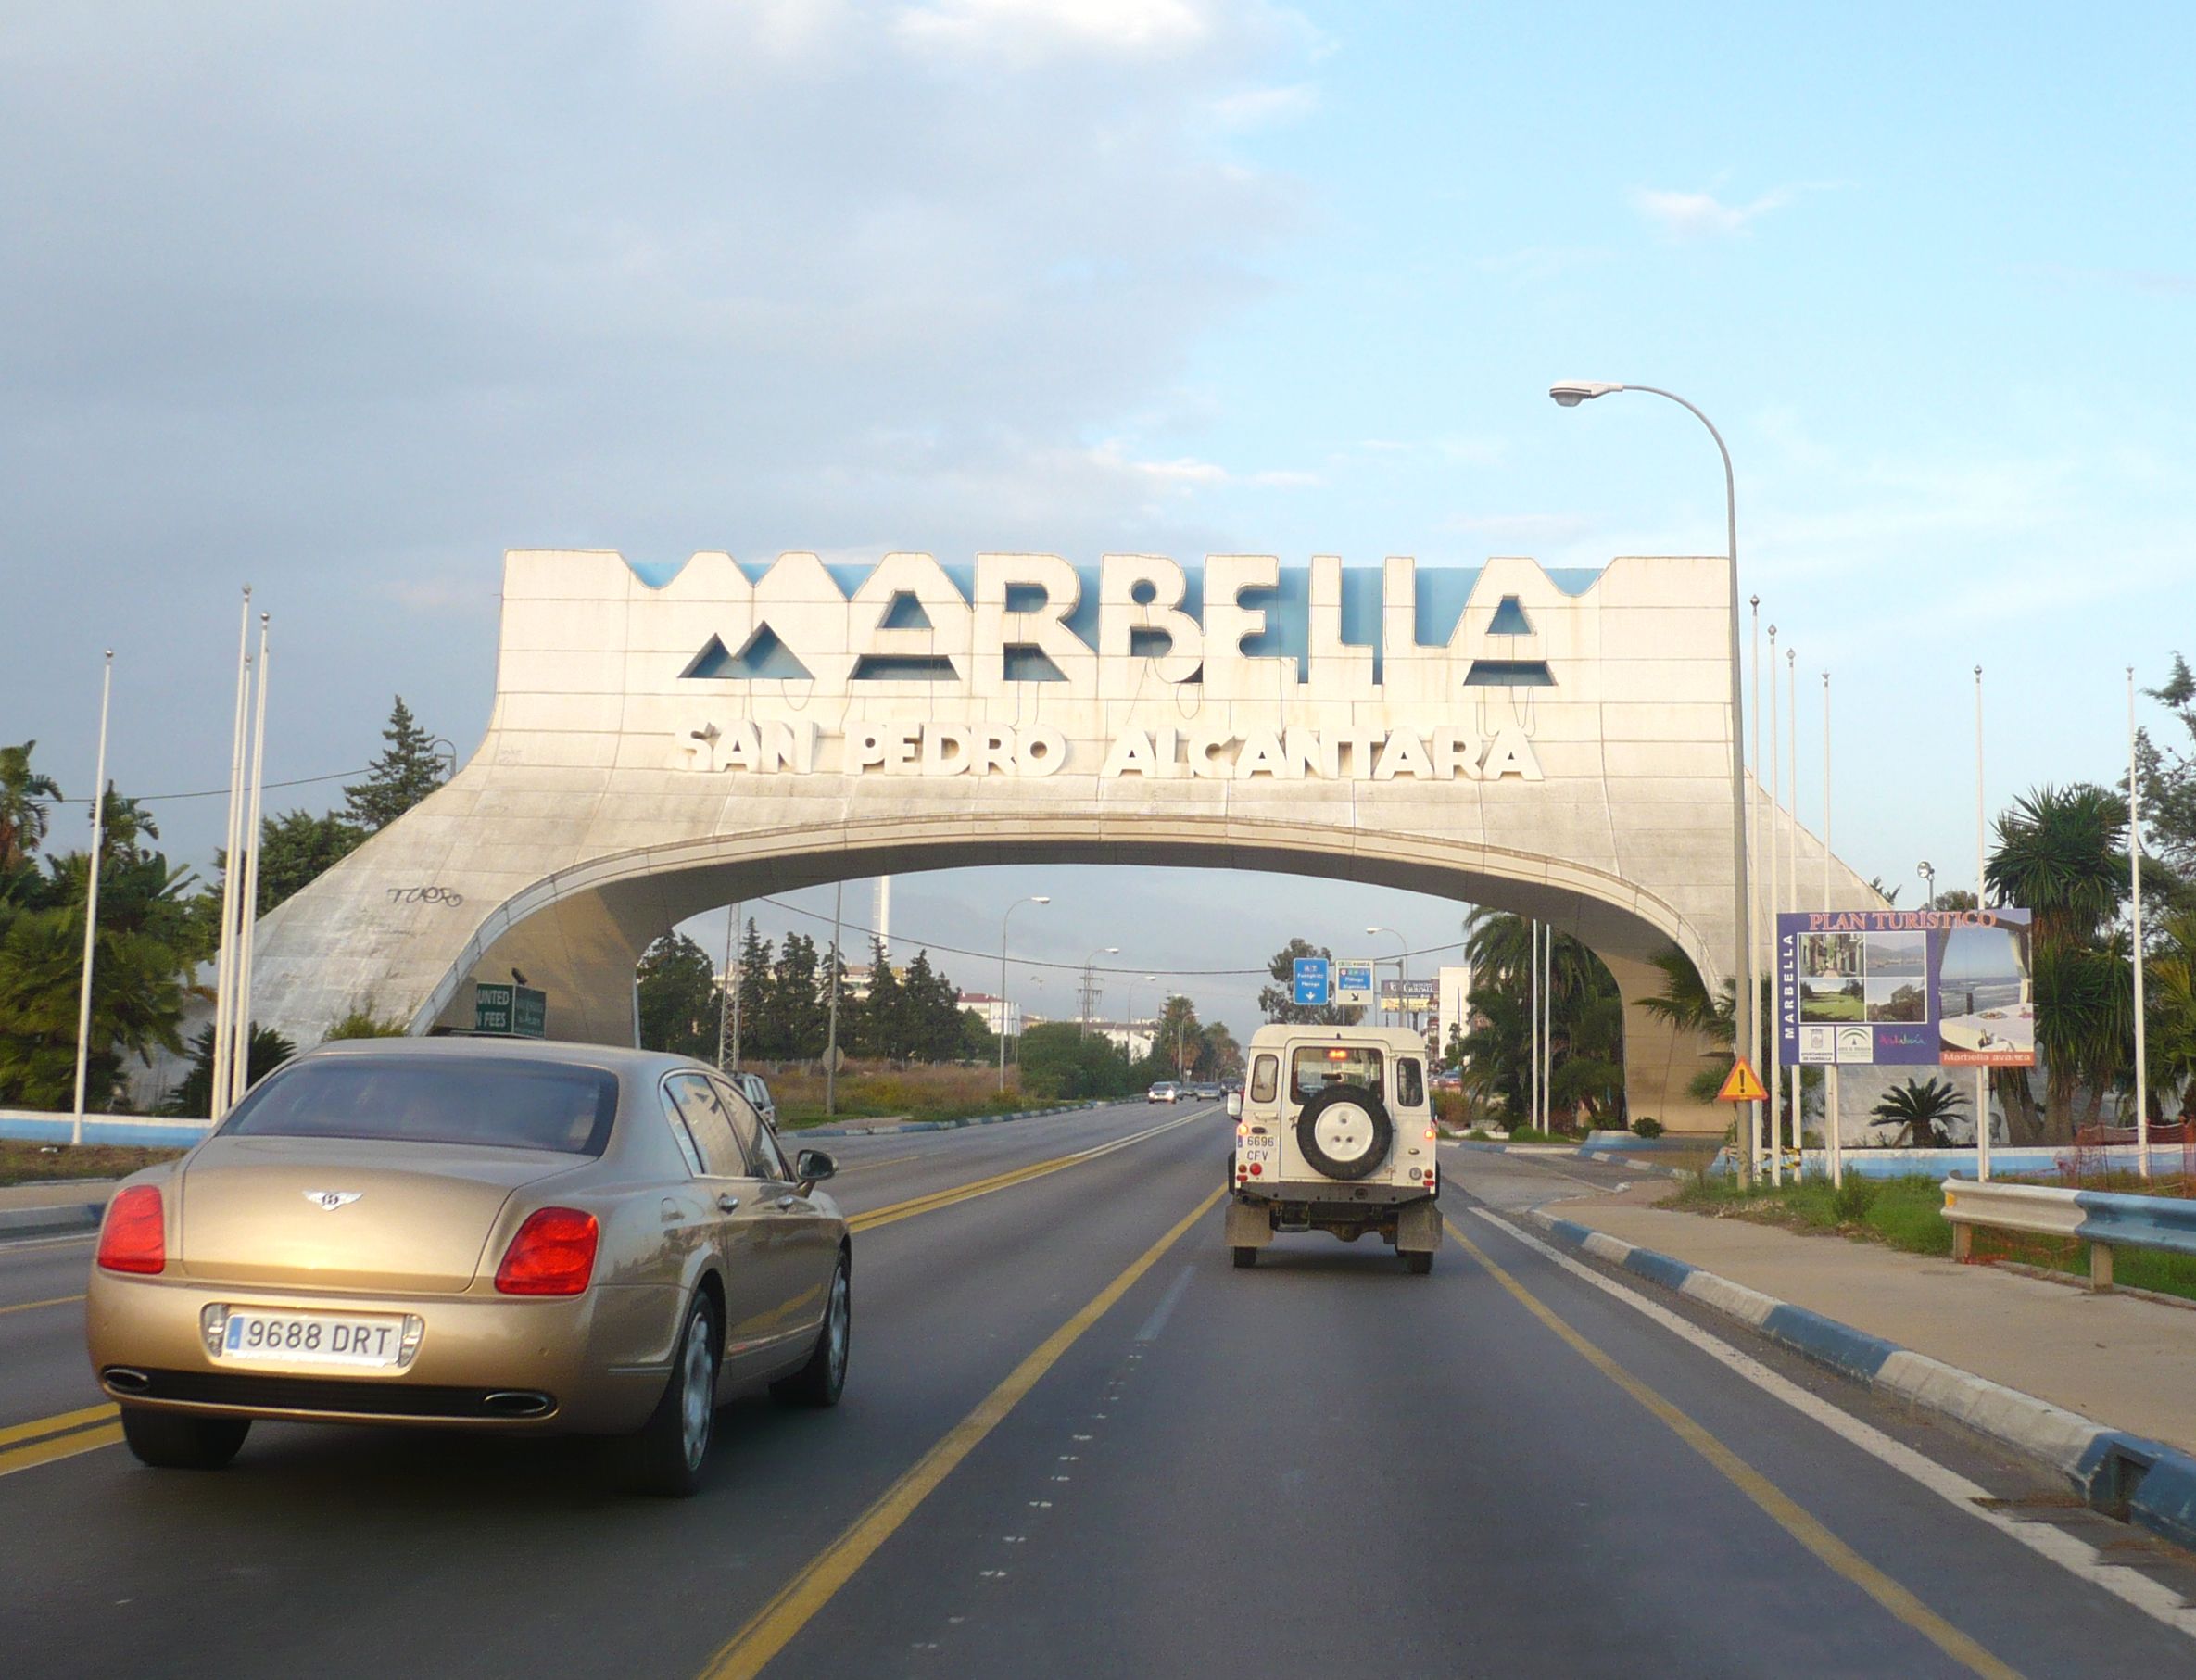 Vehículos transitando por el arco de Marbella. 